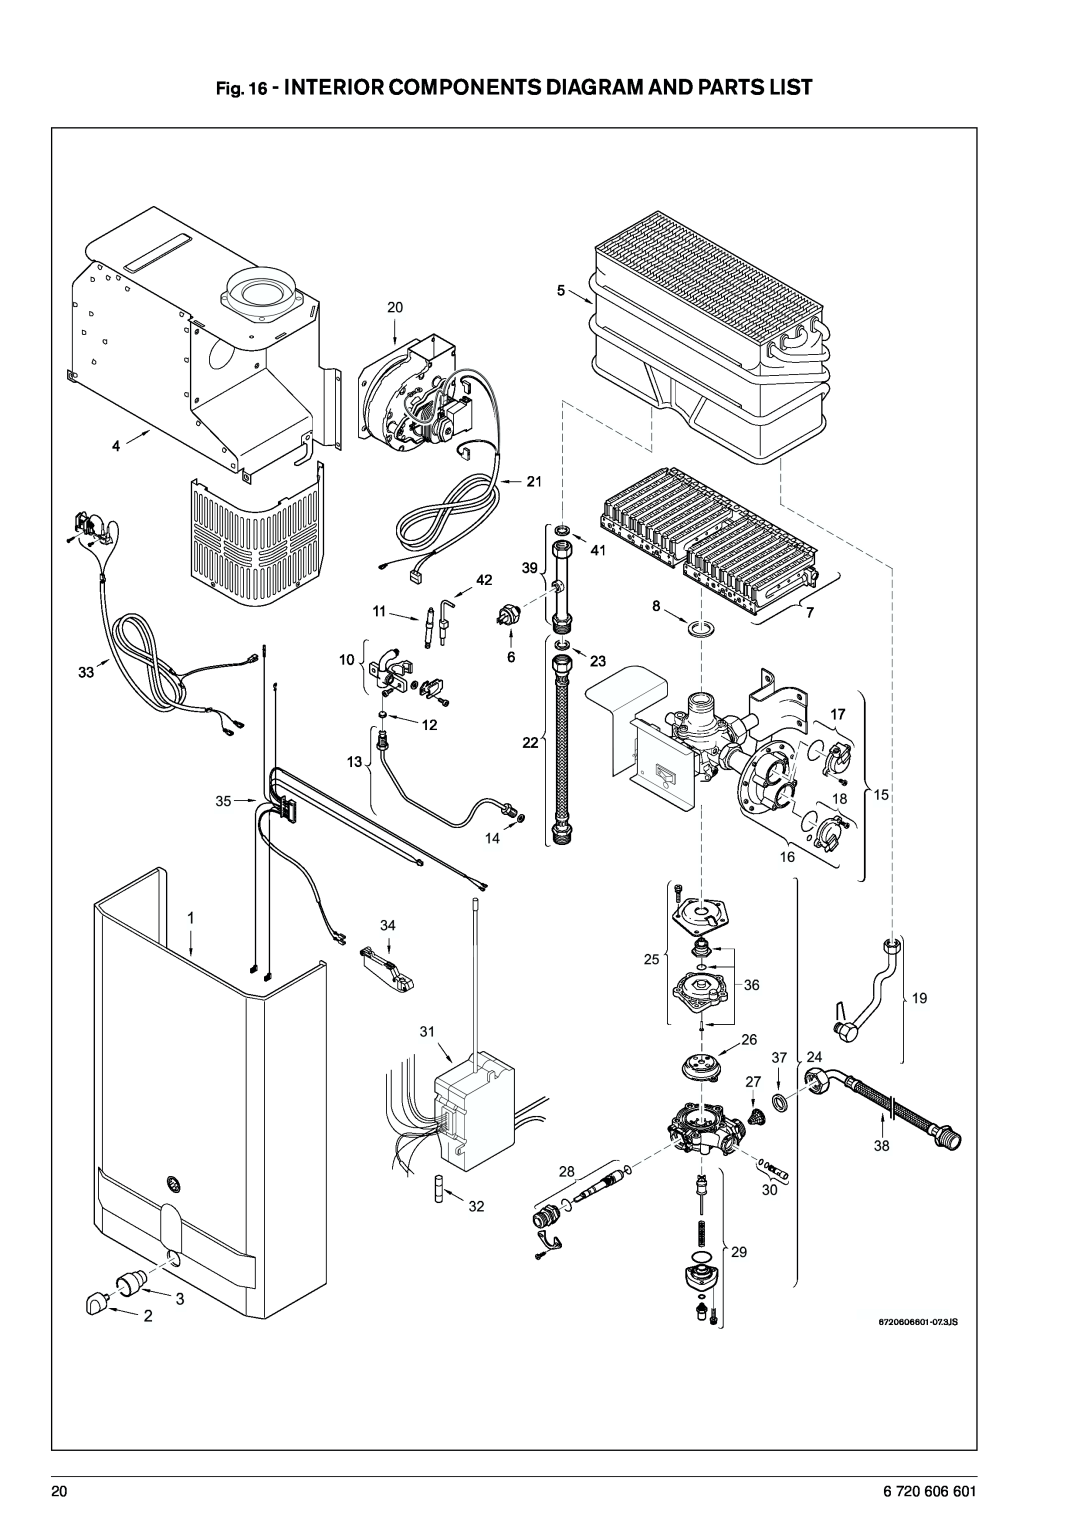 AquaStar 125FX NG, 125FX LP specifications Interior Components Diagram And Parts List, 6 720 606 